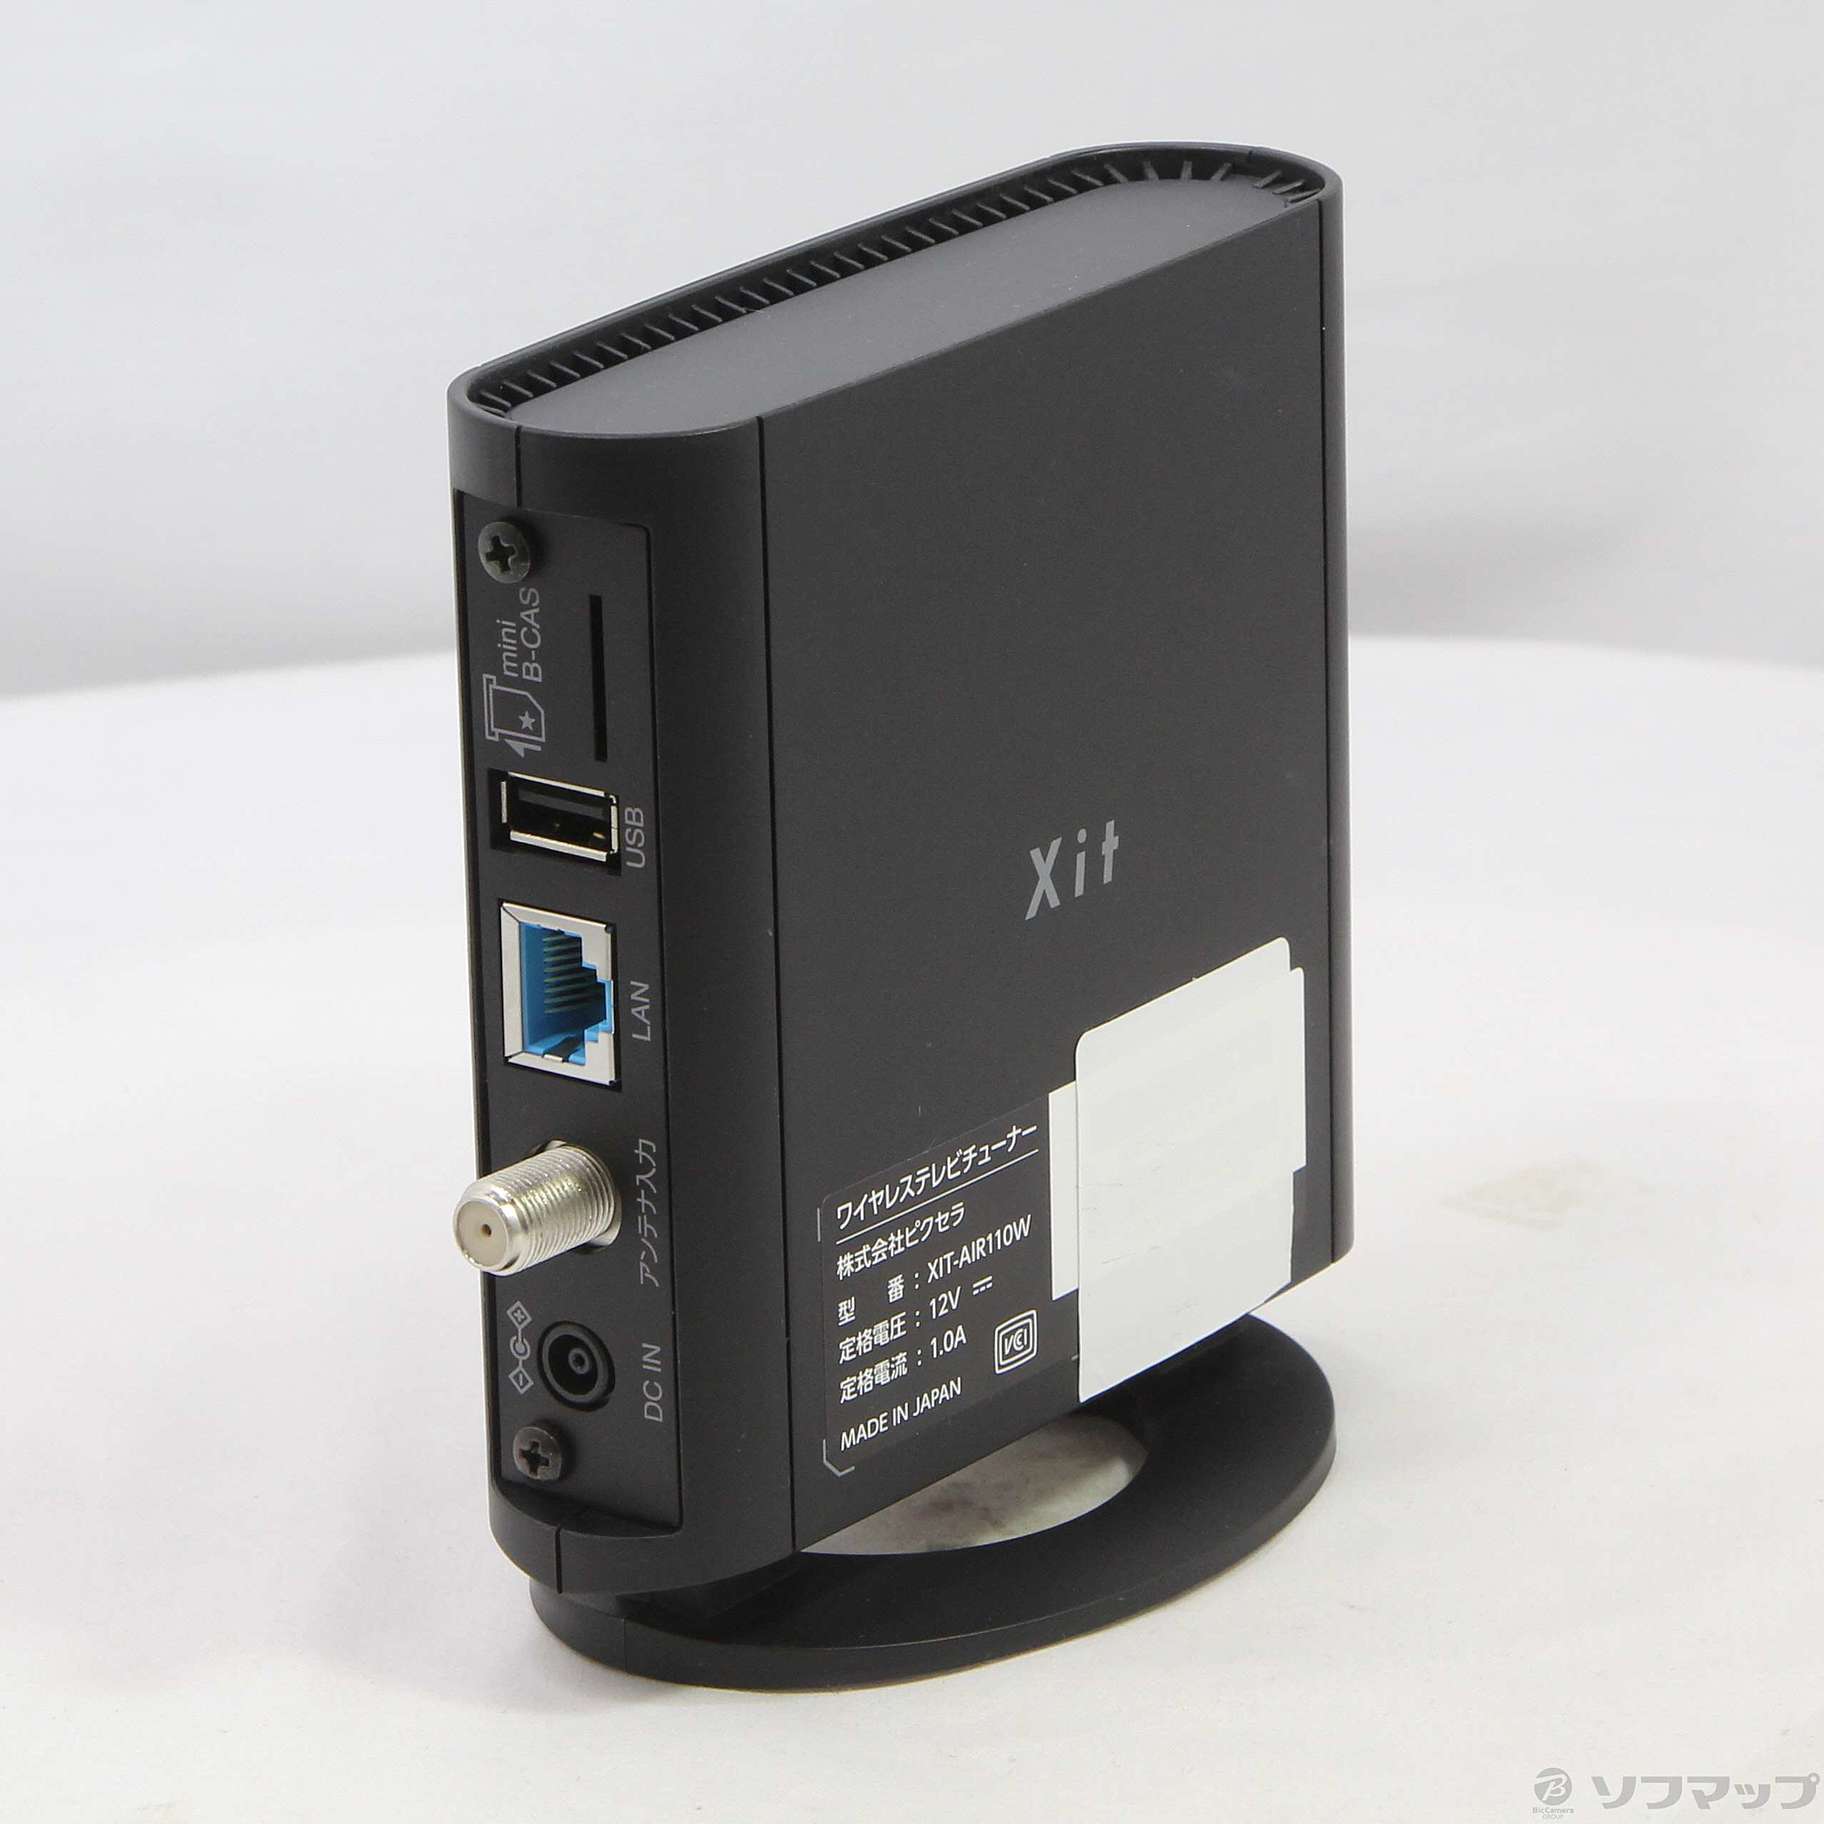 ワイヤレス テレビチューナー Xit AirBox XIT-AIR110W - テレビ/映像機器